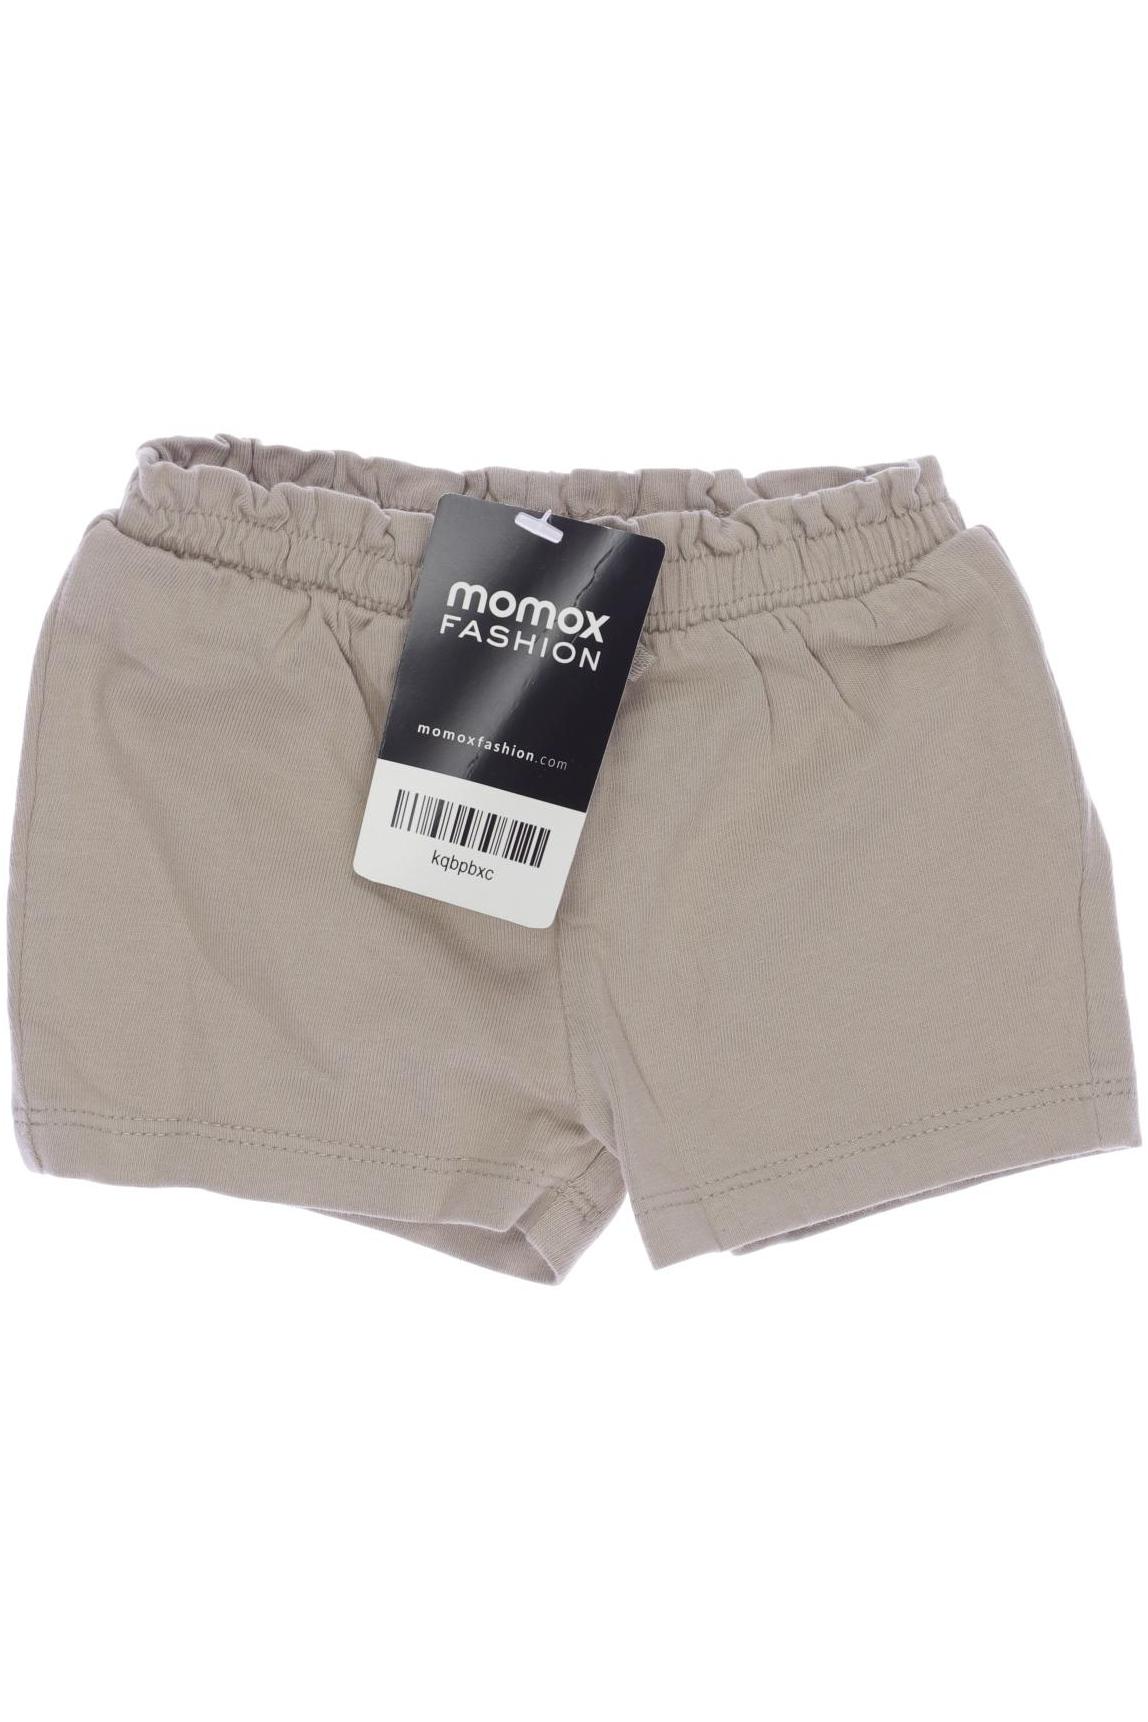 H&M Damen Shorts, beige, Gr. 56 von H&M